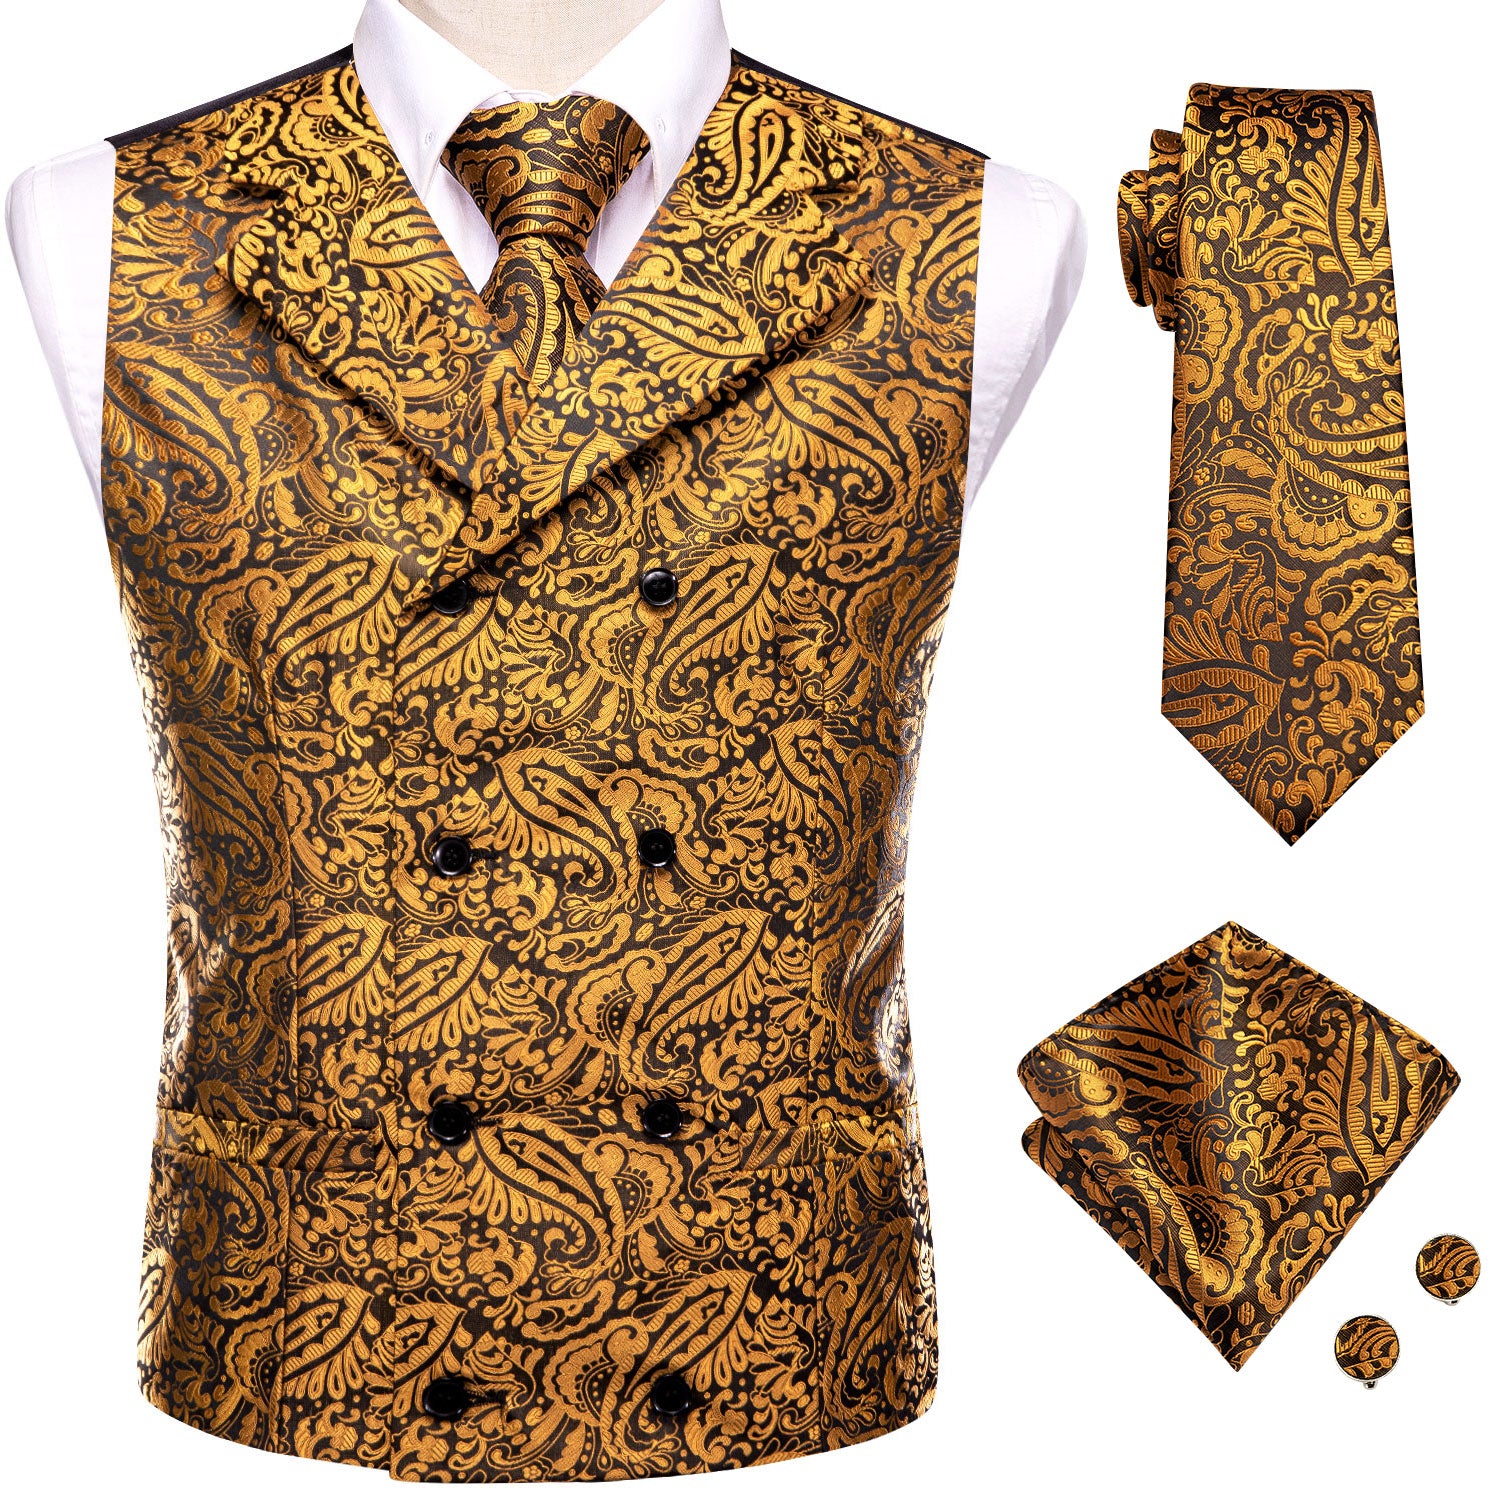 New Gold Paisley Men's Collar Vest Hanky Cufflinks Tie Set